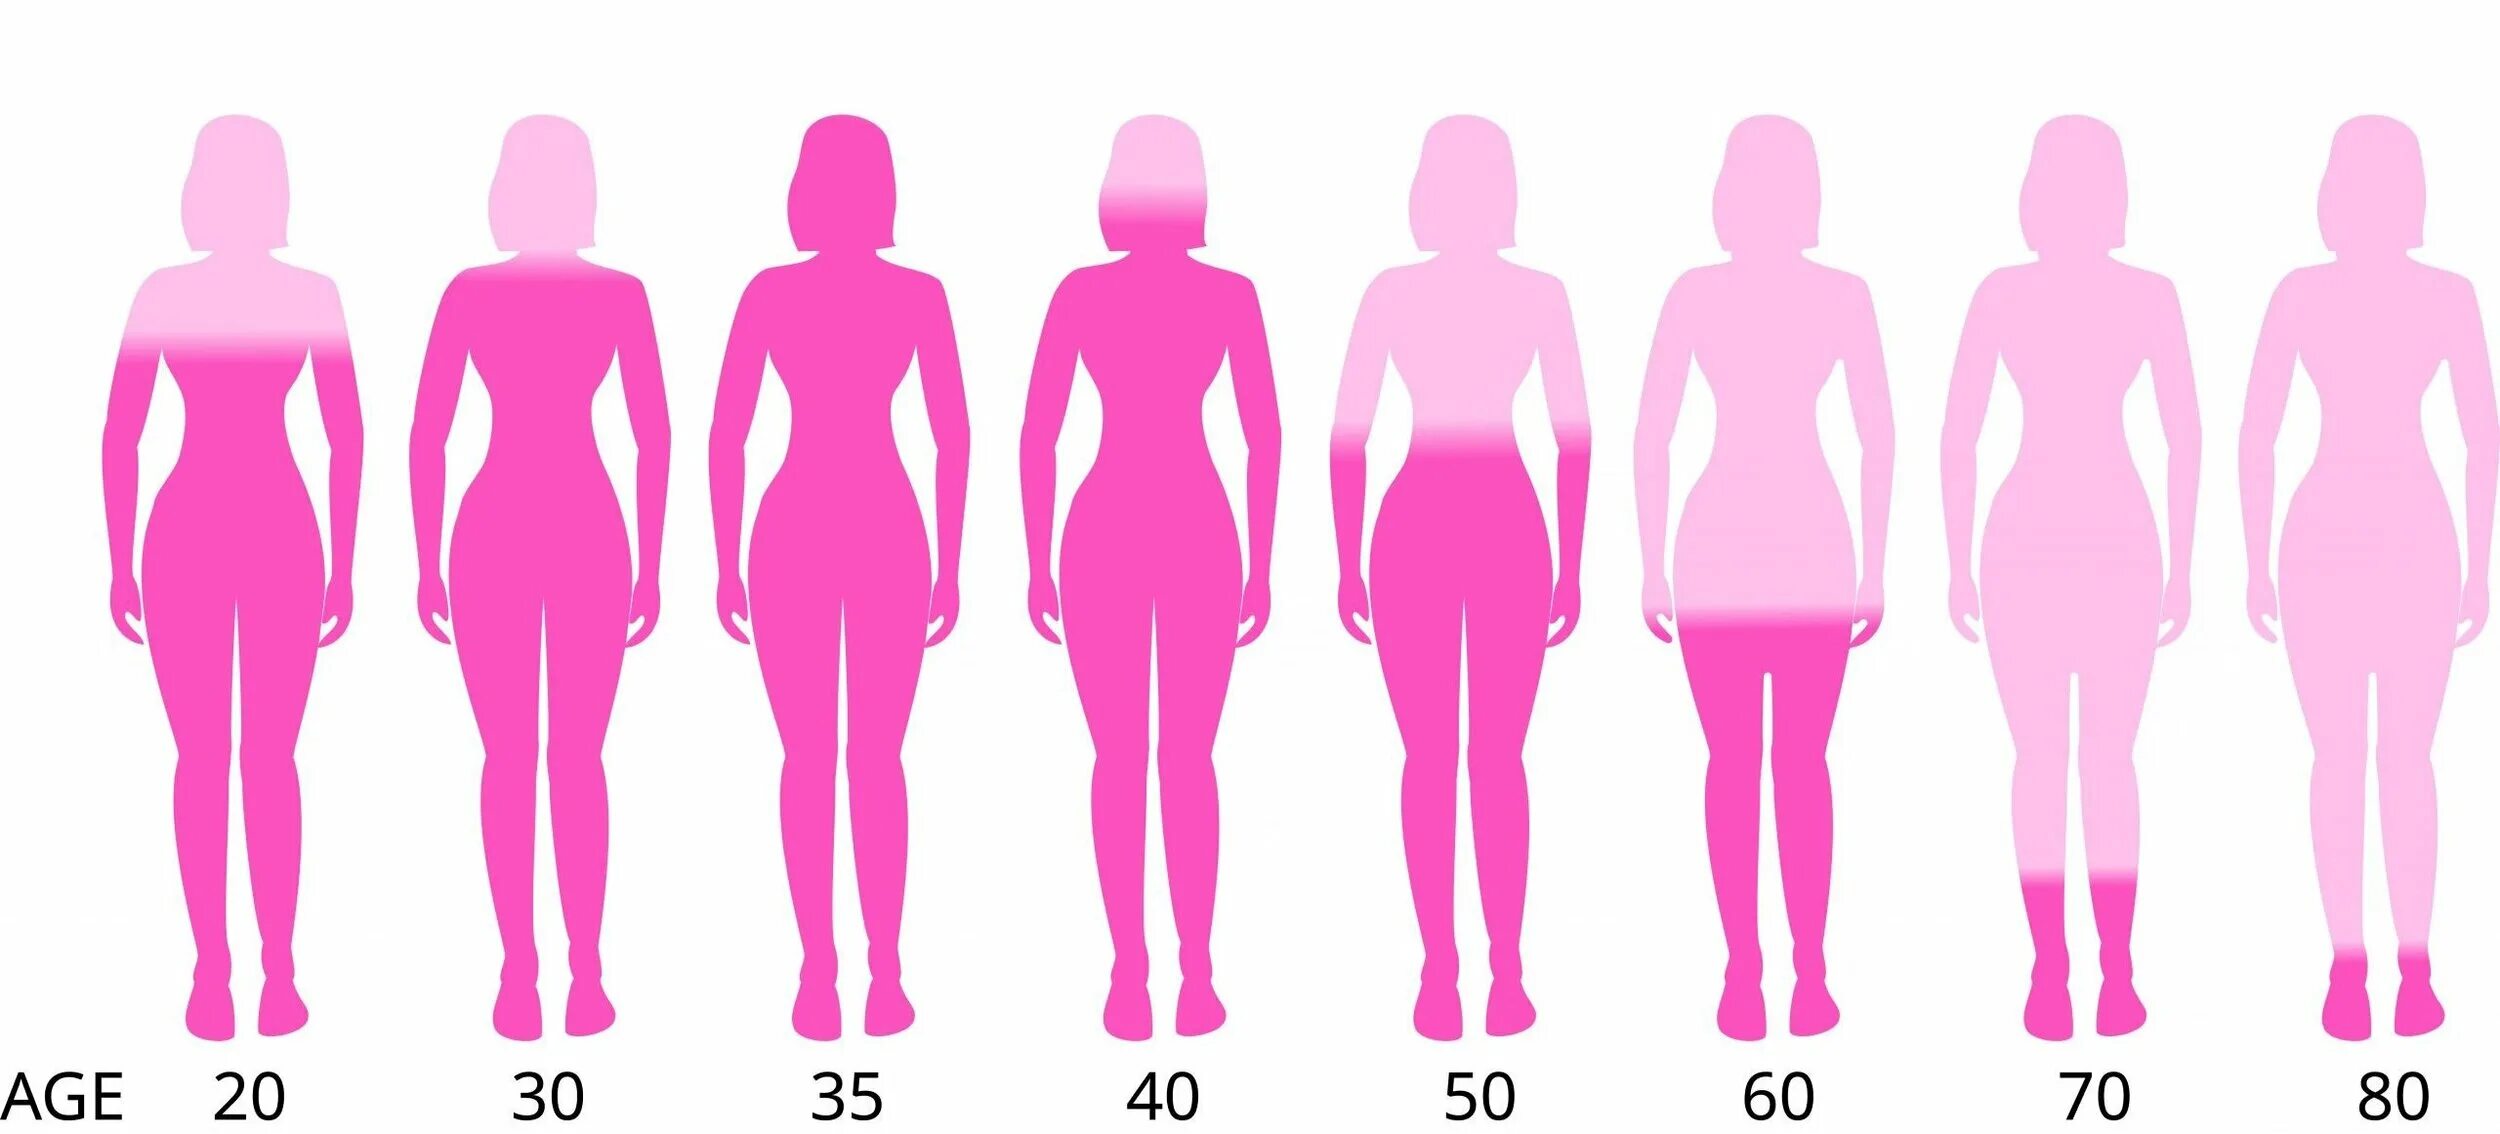 Повышенный уровень у женщин. Девушки разного возраста. Уровень эстрогена в разном возрасте. Уровень эстрогена у женщин по возрасту. Тело женщины в разном возрасте.